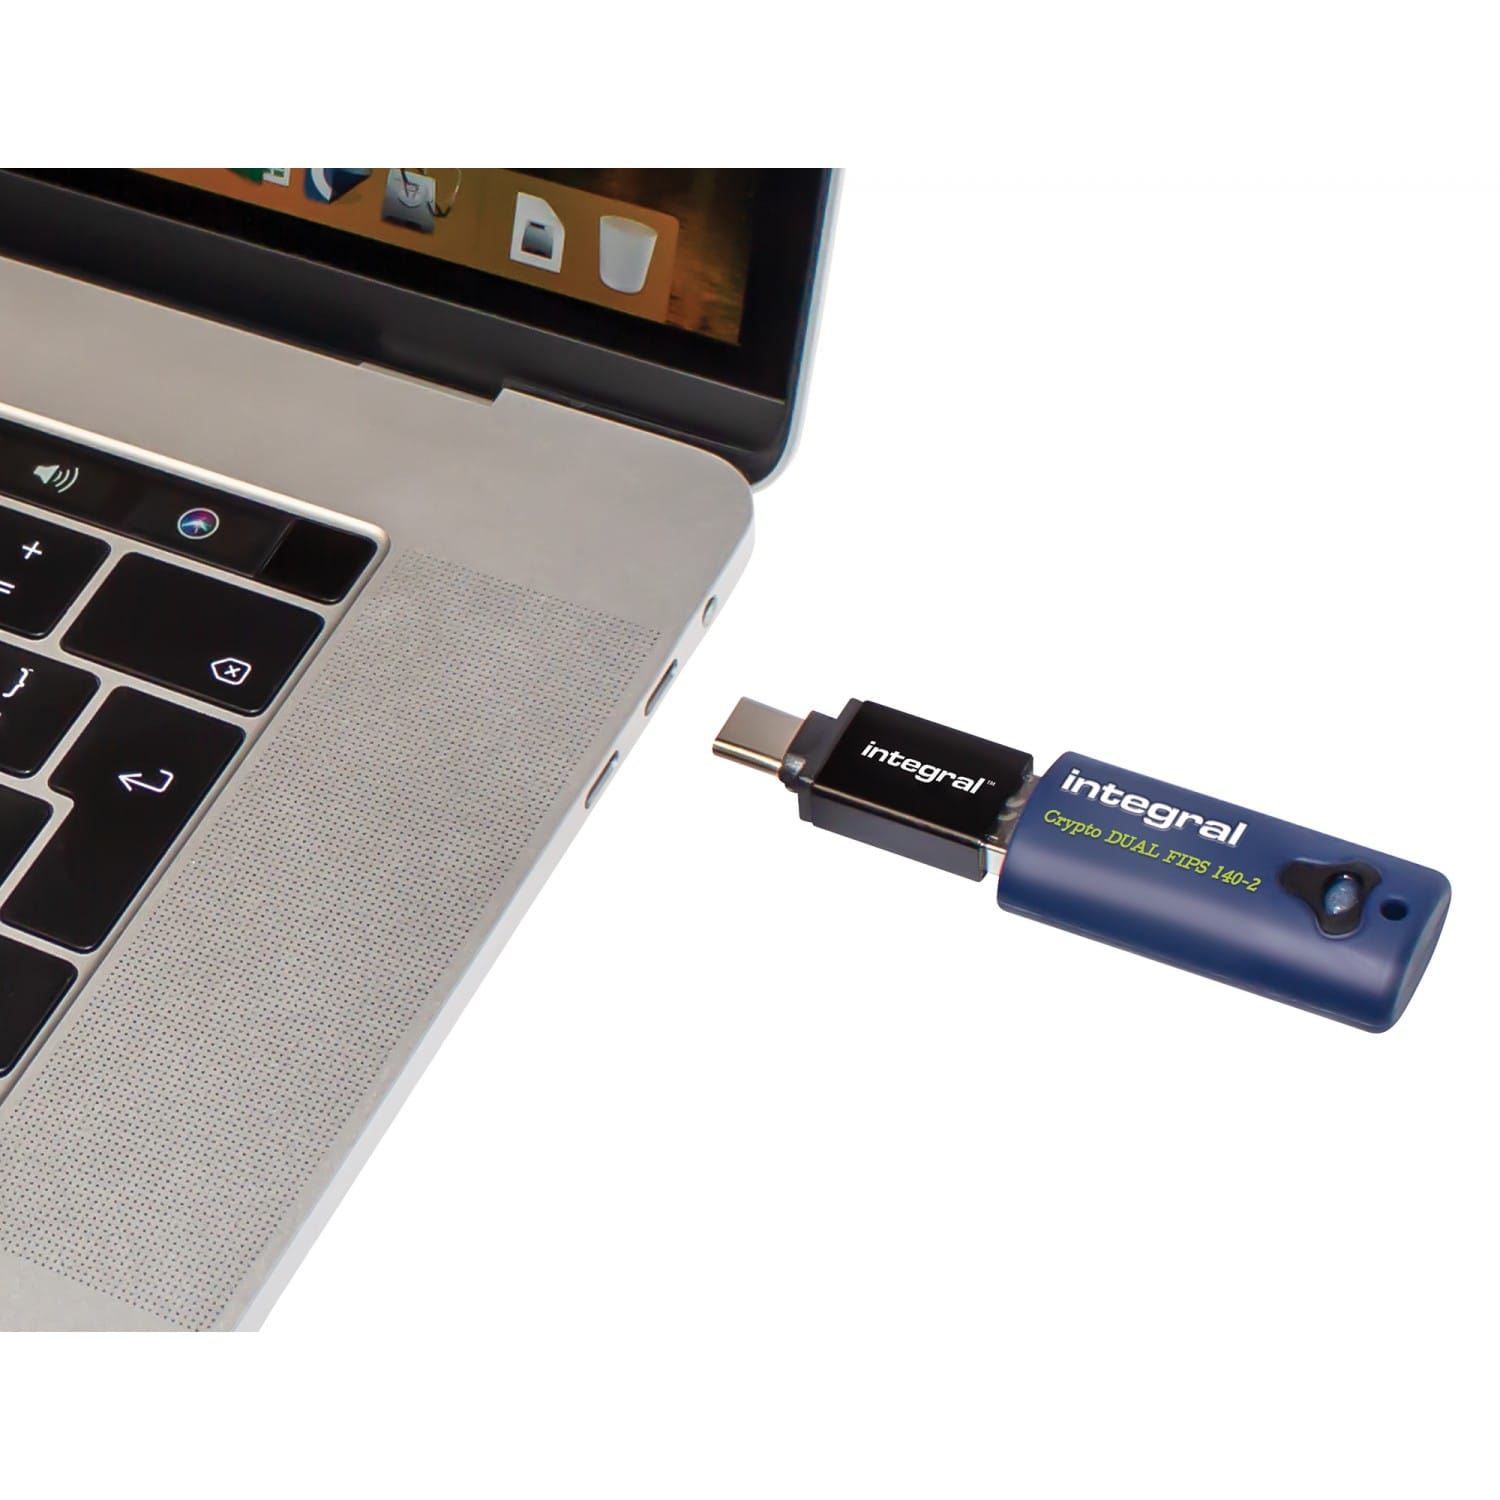 Adaptateur USB INTEGRAL pour smartphone/tablette (USB-C / USB